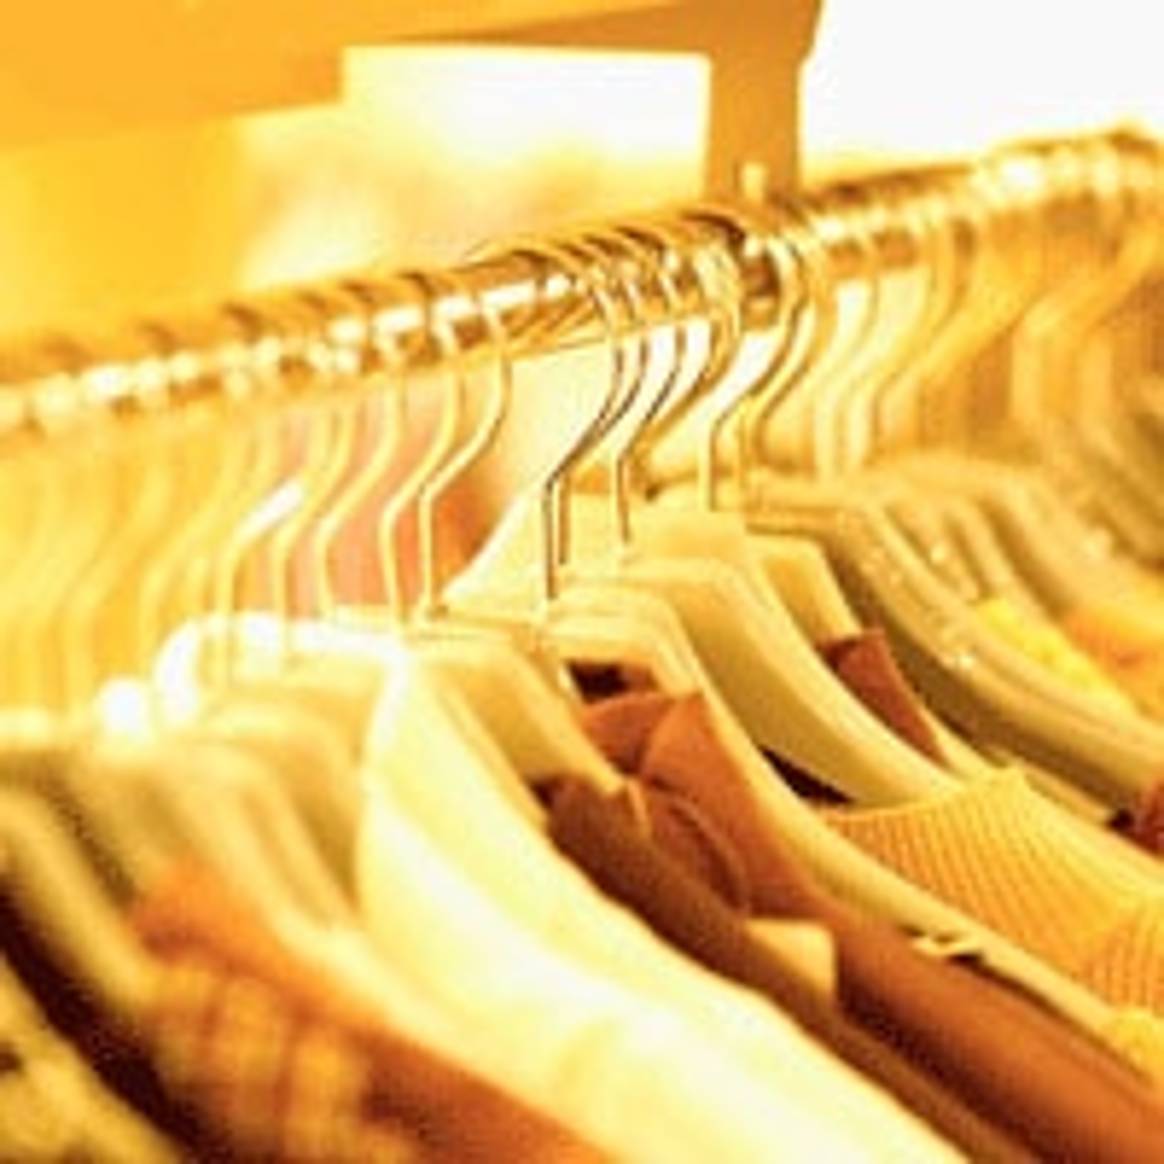 Fabricación de ropa y textiles crecerá un 2,7% en 2013